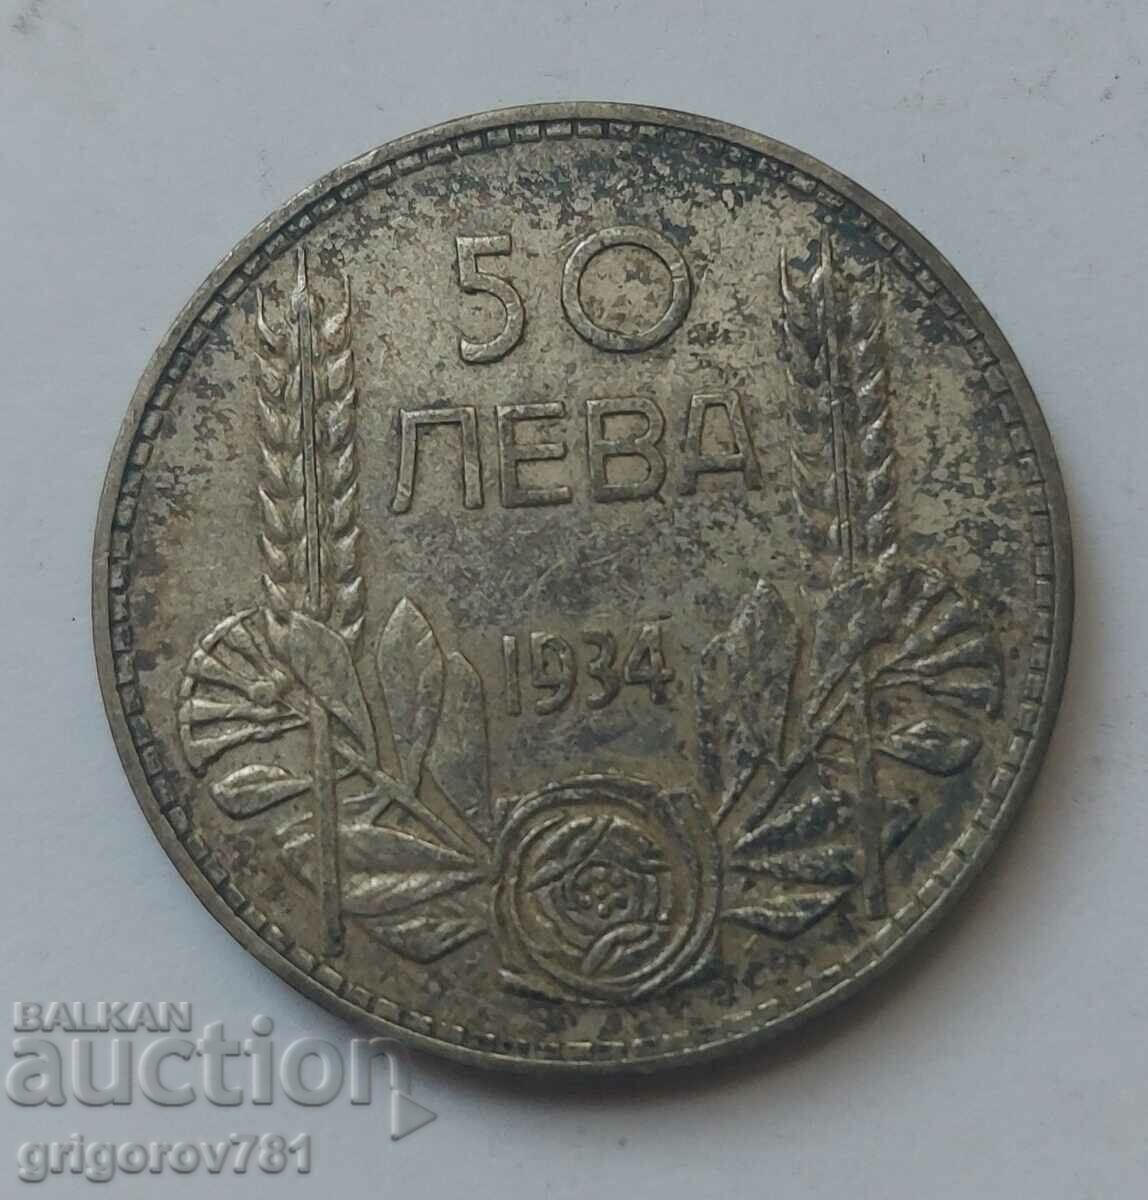 Ασήμι 50 λέβα Βουλγαρία 1934 - ασημένιο νόμισμα #15